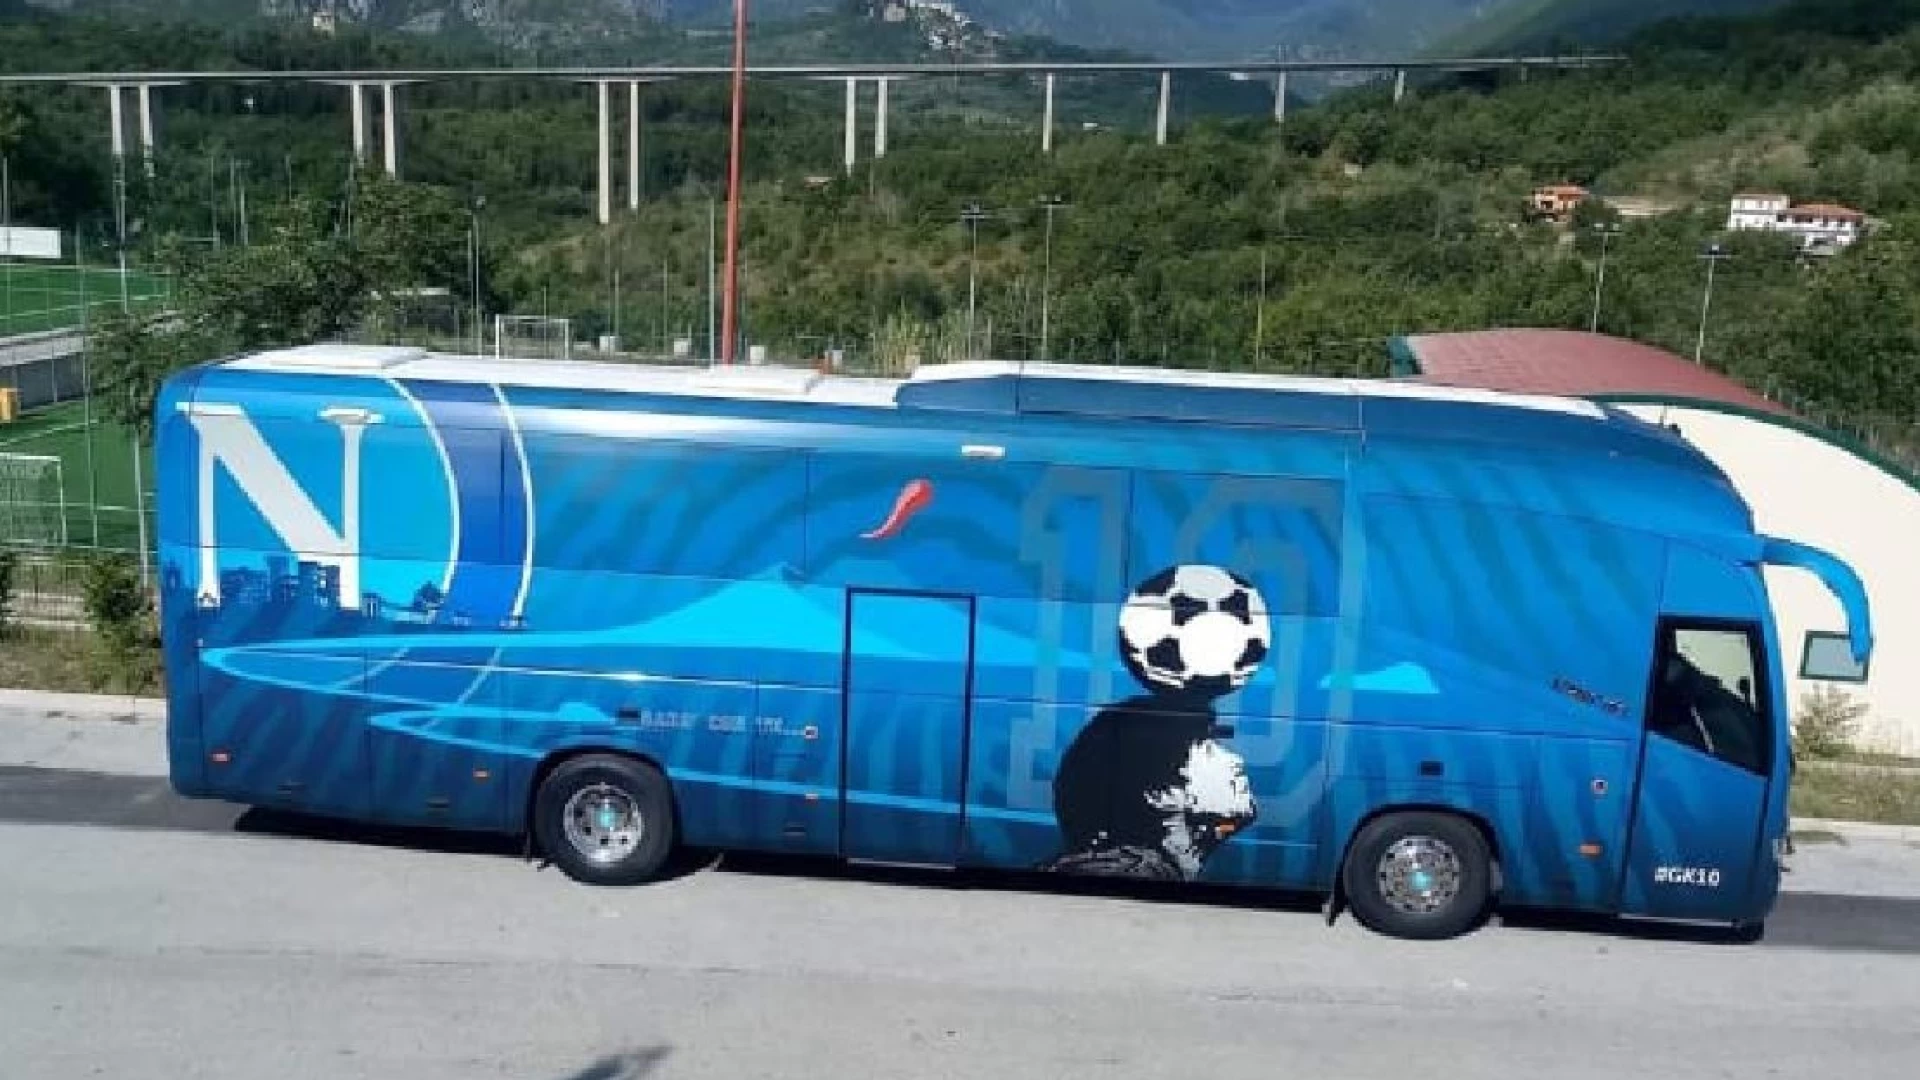 La foto-notizia: l’autobus dei “Campioni d’Italia” avvistato a Cerro al Volturno ma solo per la squadra Primavera.